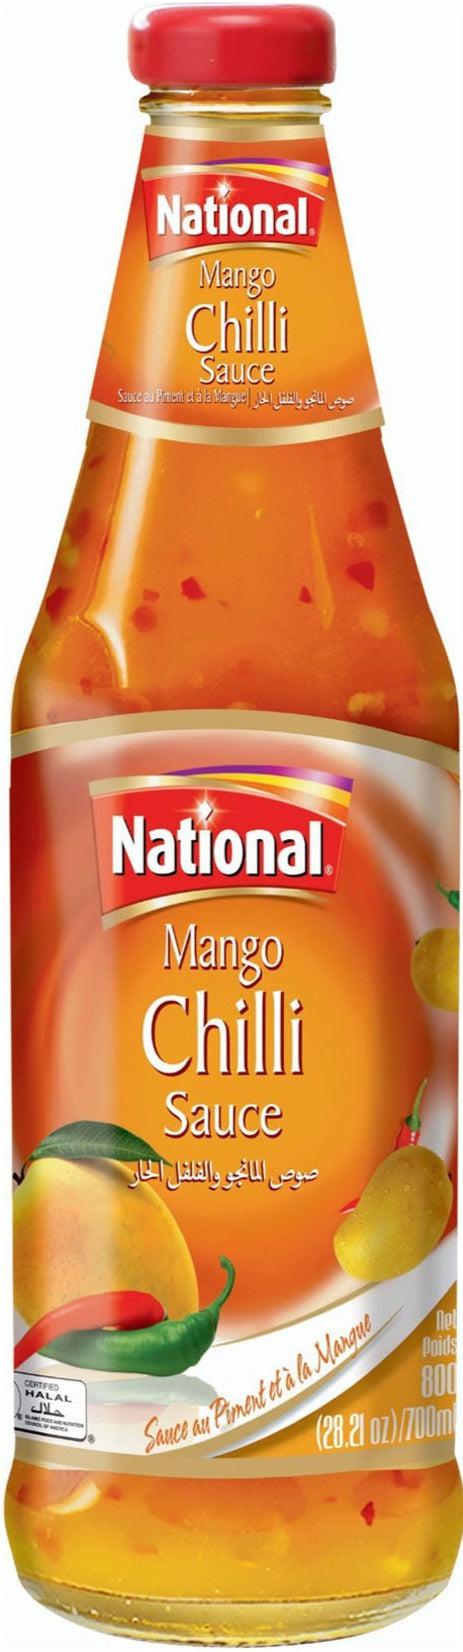 National - Mango Chilli Sauce